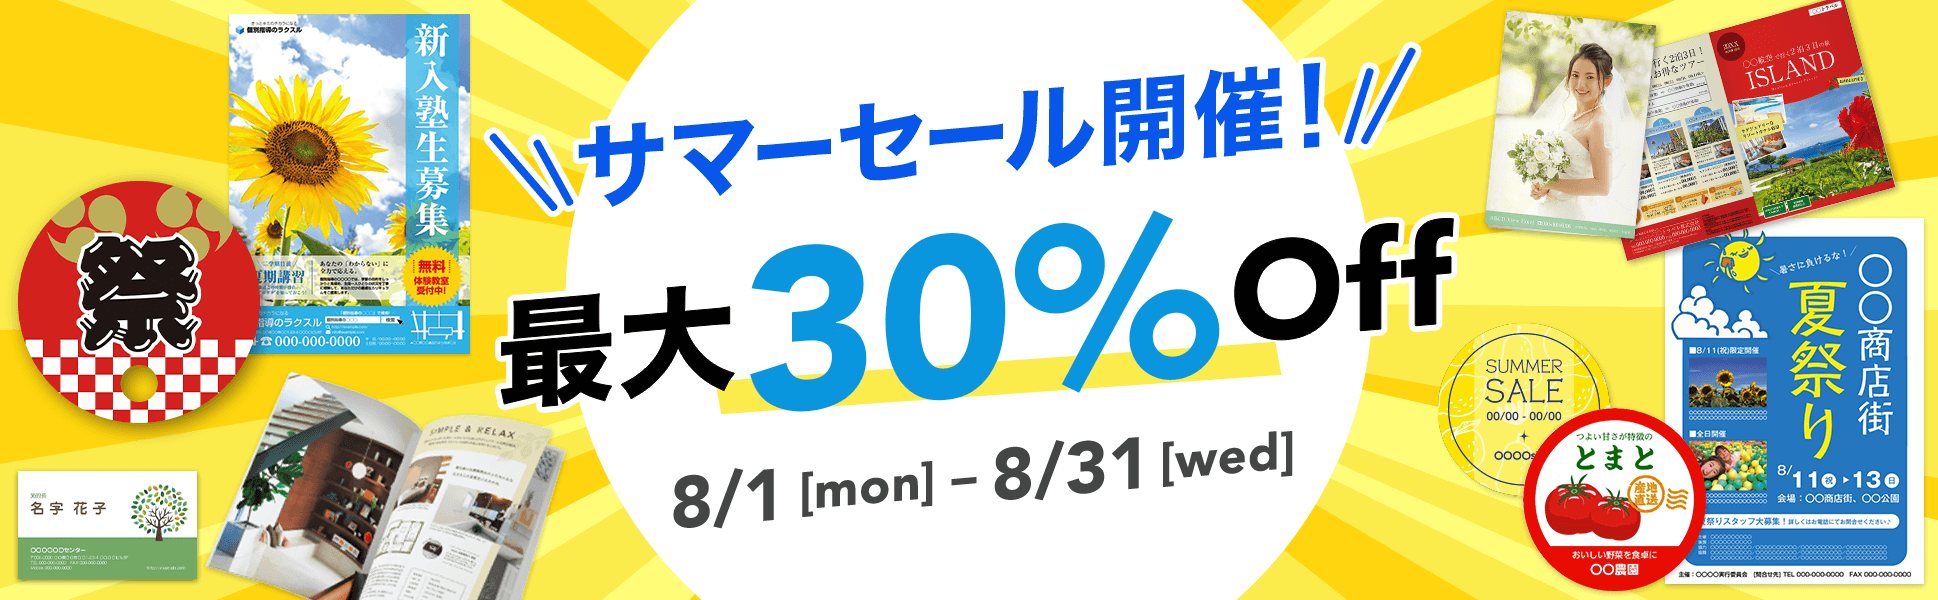 【最大30%OFF!】サマーセール